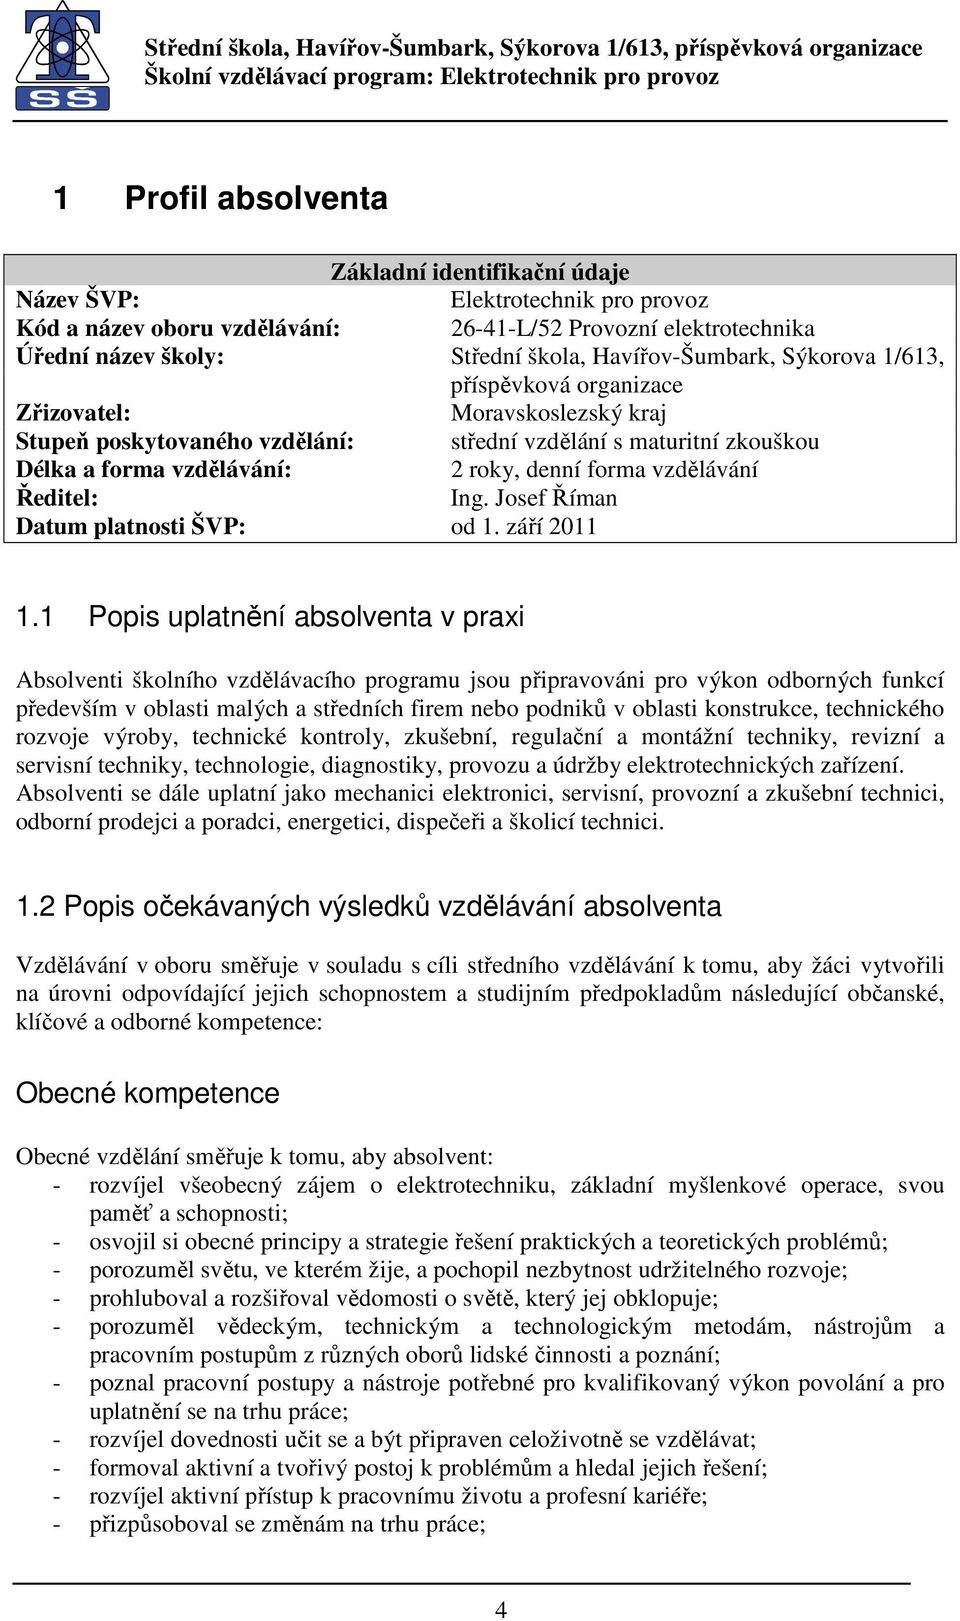 forma vzdělávání Ředitel: Ing. Josef Říman Datum platnosti ŠVP: od 1. září 2011 1.